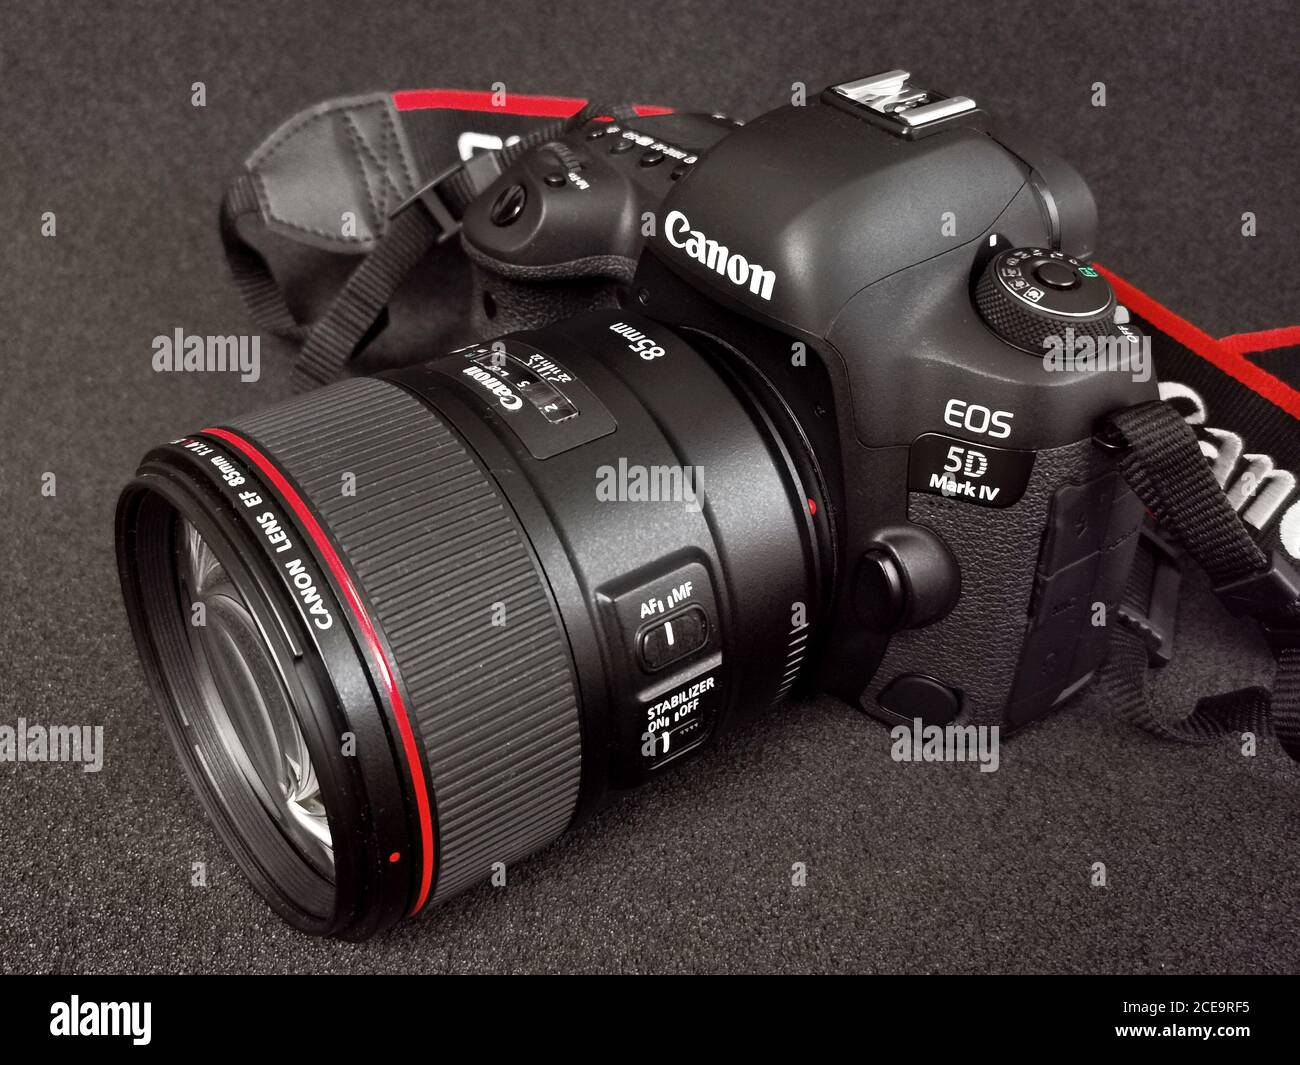 Appareil photo Canon 5D Mark IV avec objectif Canon EF 85mm f1.4 L IS USM sur fond noir. 31.08.2020. Varsovie, Pologne Banque D'Images